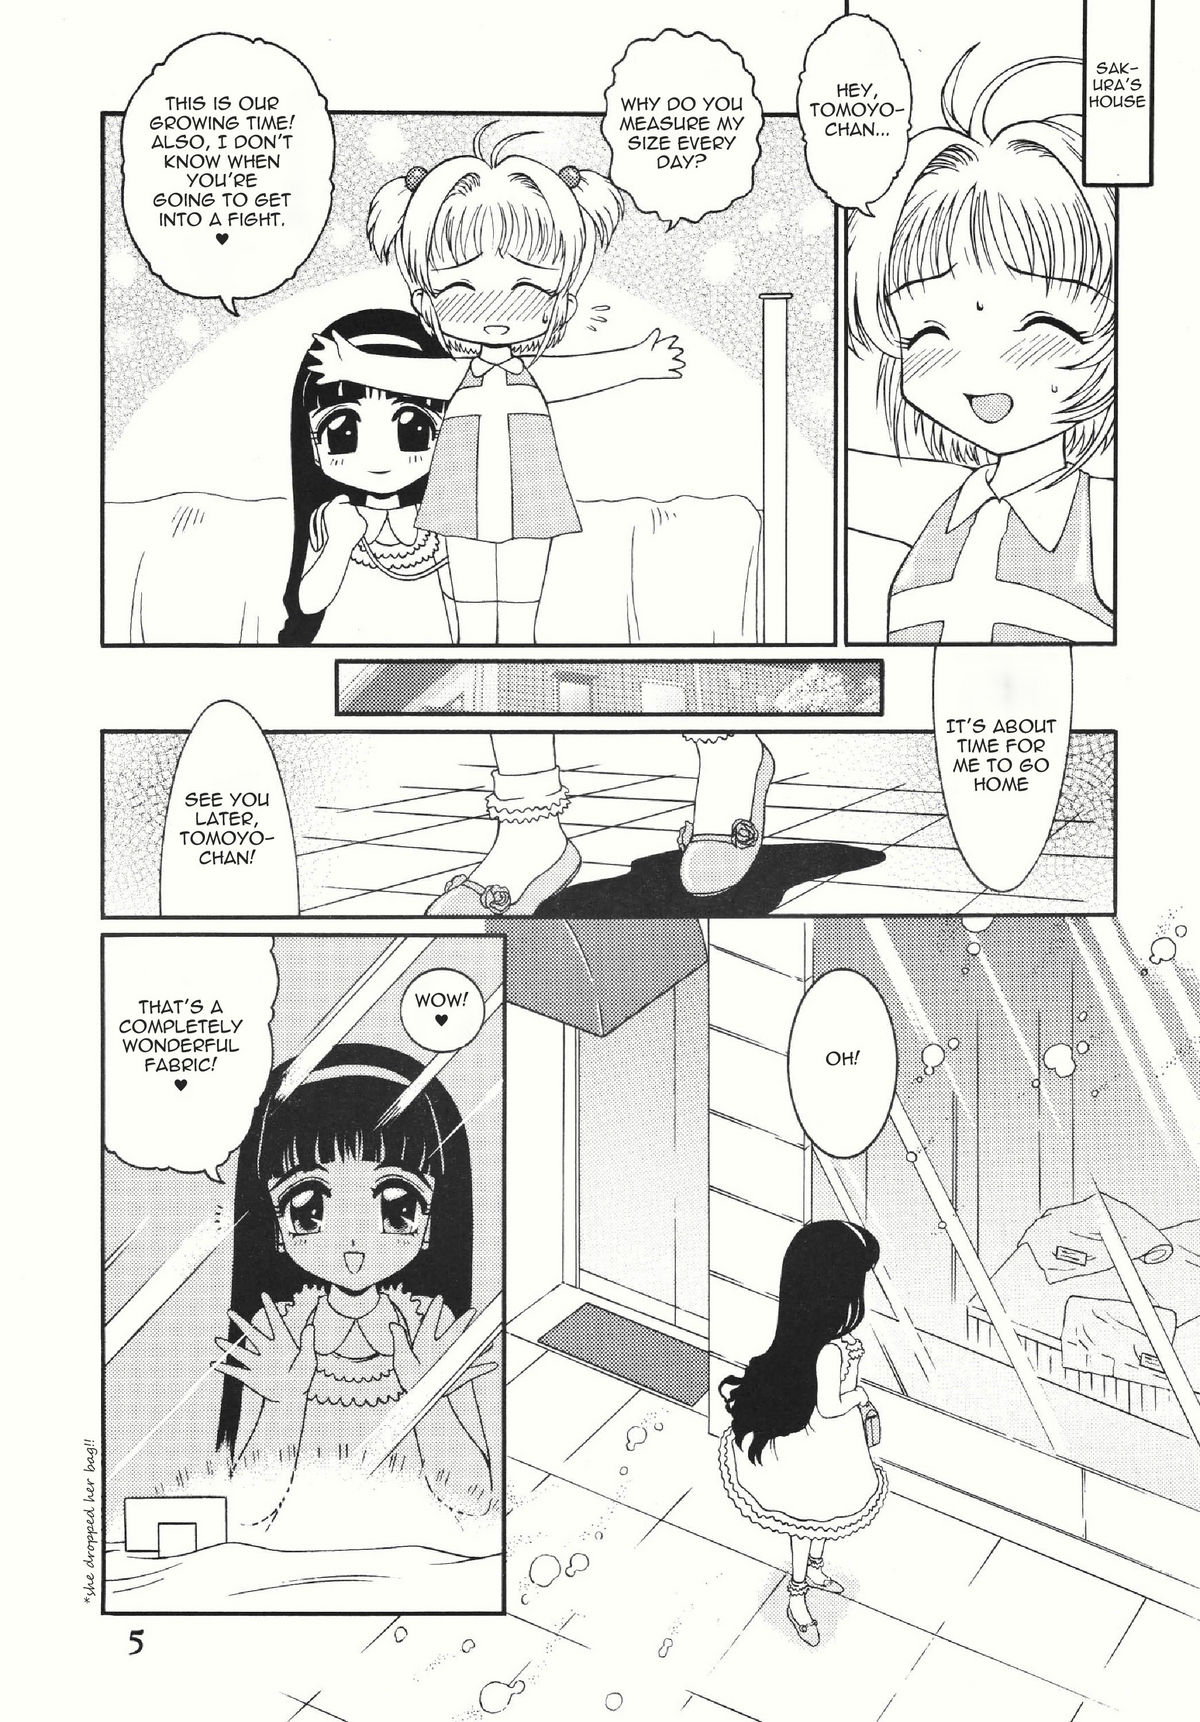 [Studio Z-Angam] Azumaya vol4-8 - Card Captor Sakura [English] page 1 full